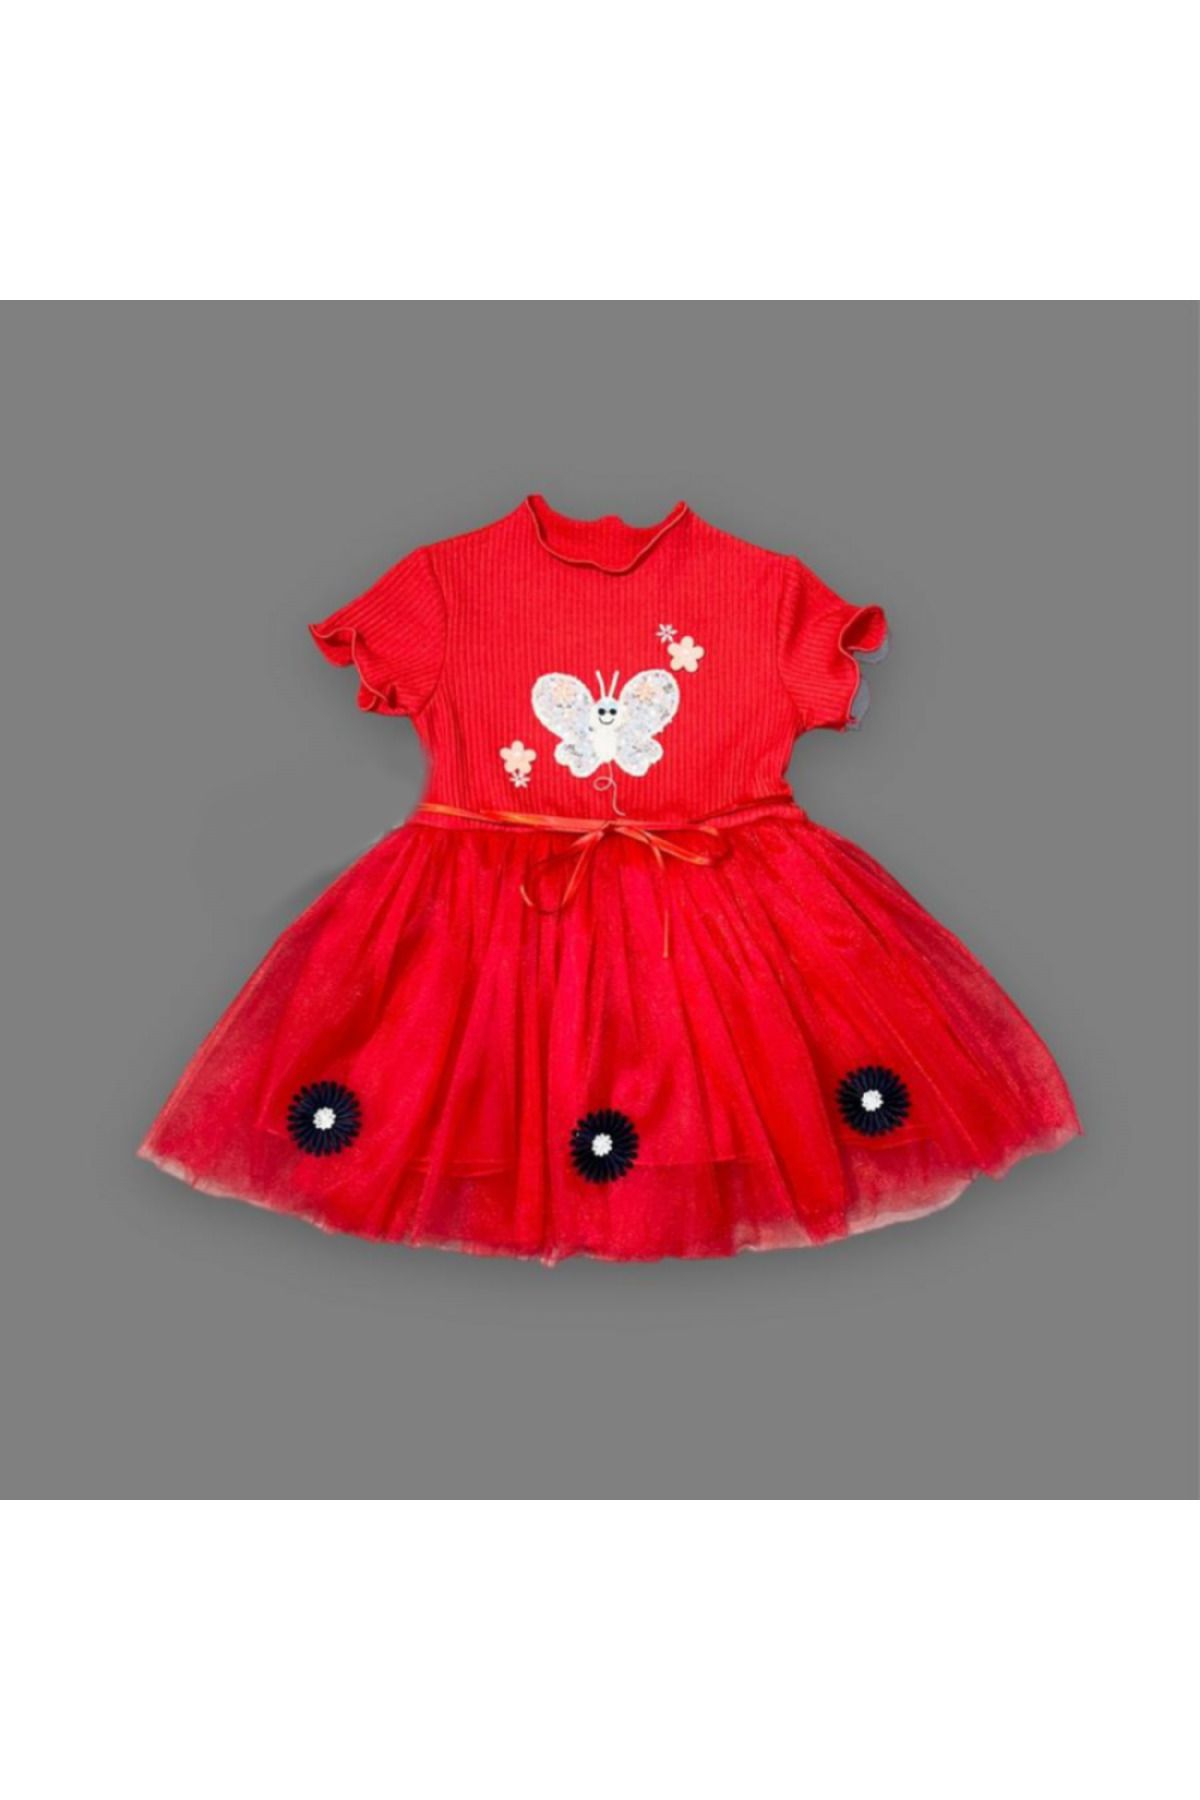 Hera Giyim Payetli Kelebek Çiçek Nakışlı Kız Bebek Elbisesi